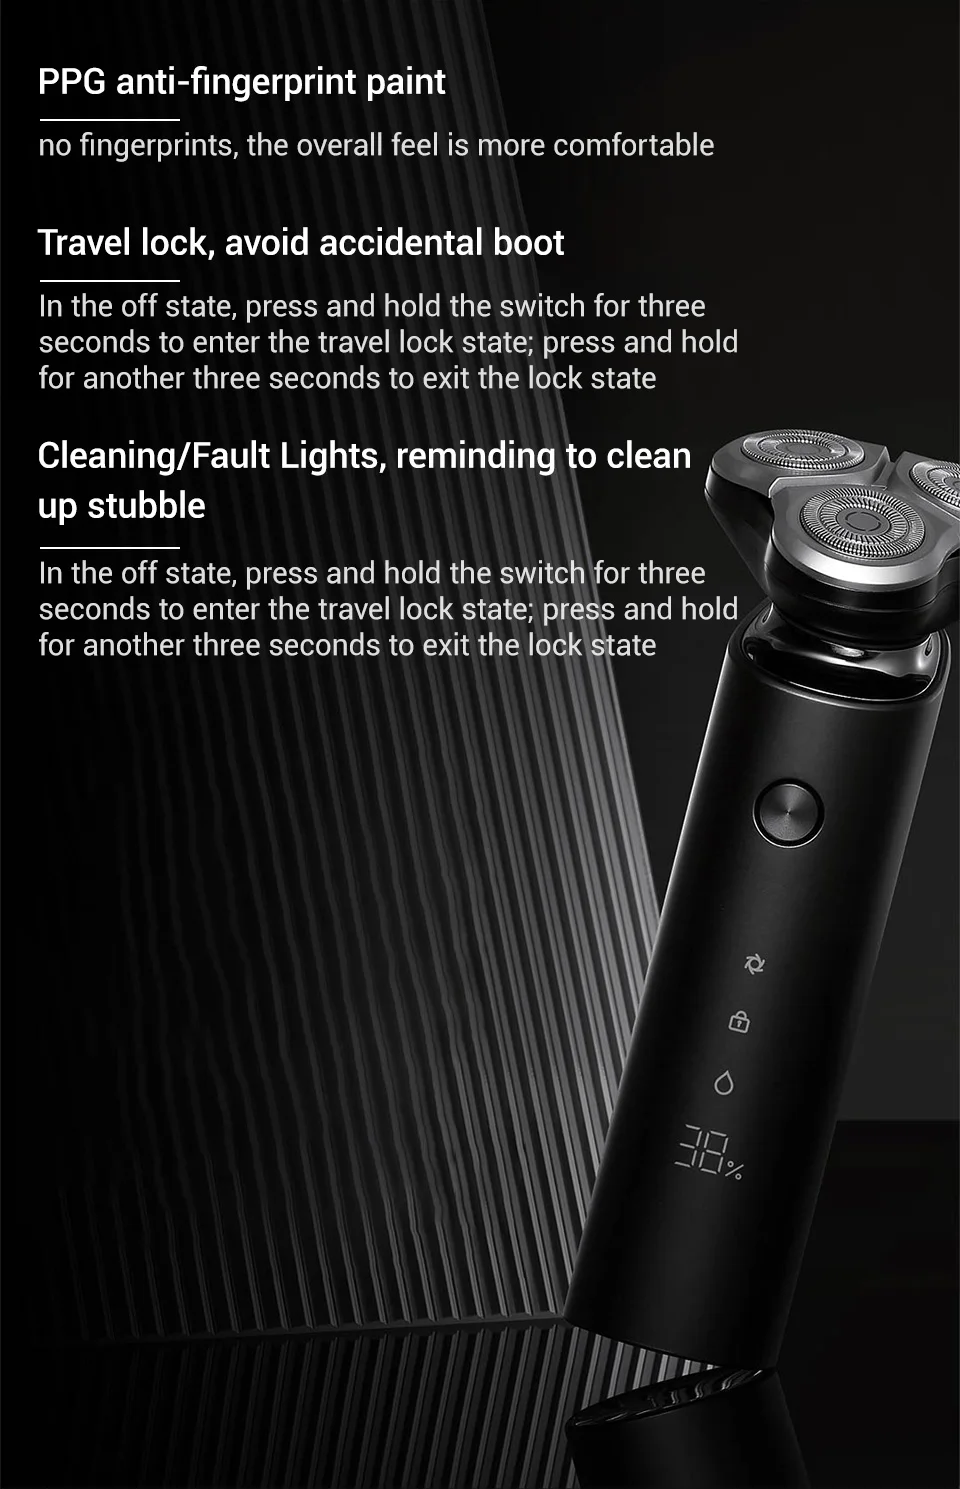 Xiaomi Mijia электробритва Для мужчин бритвы 3 голову Flex сухой мокрой моющиеся основной-Sub двойной лезвия Turbo+ режим удобные чистке